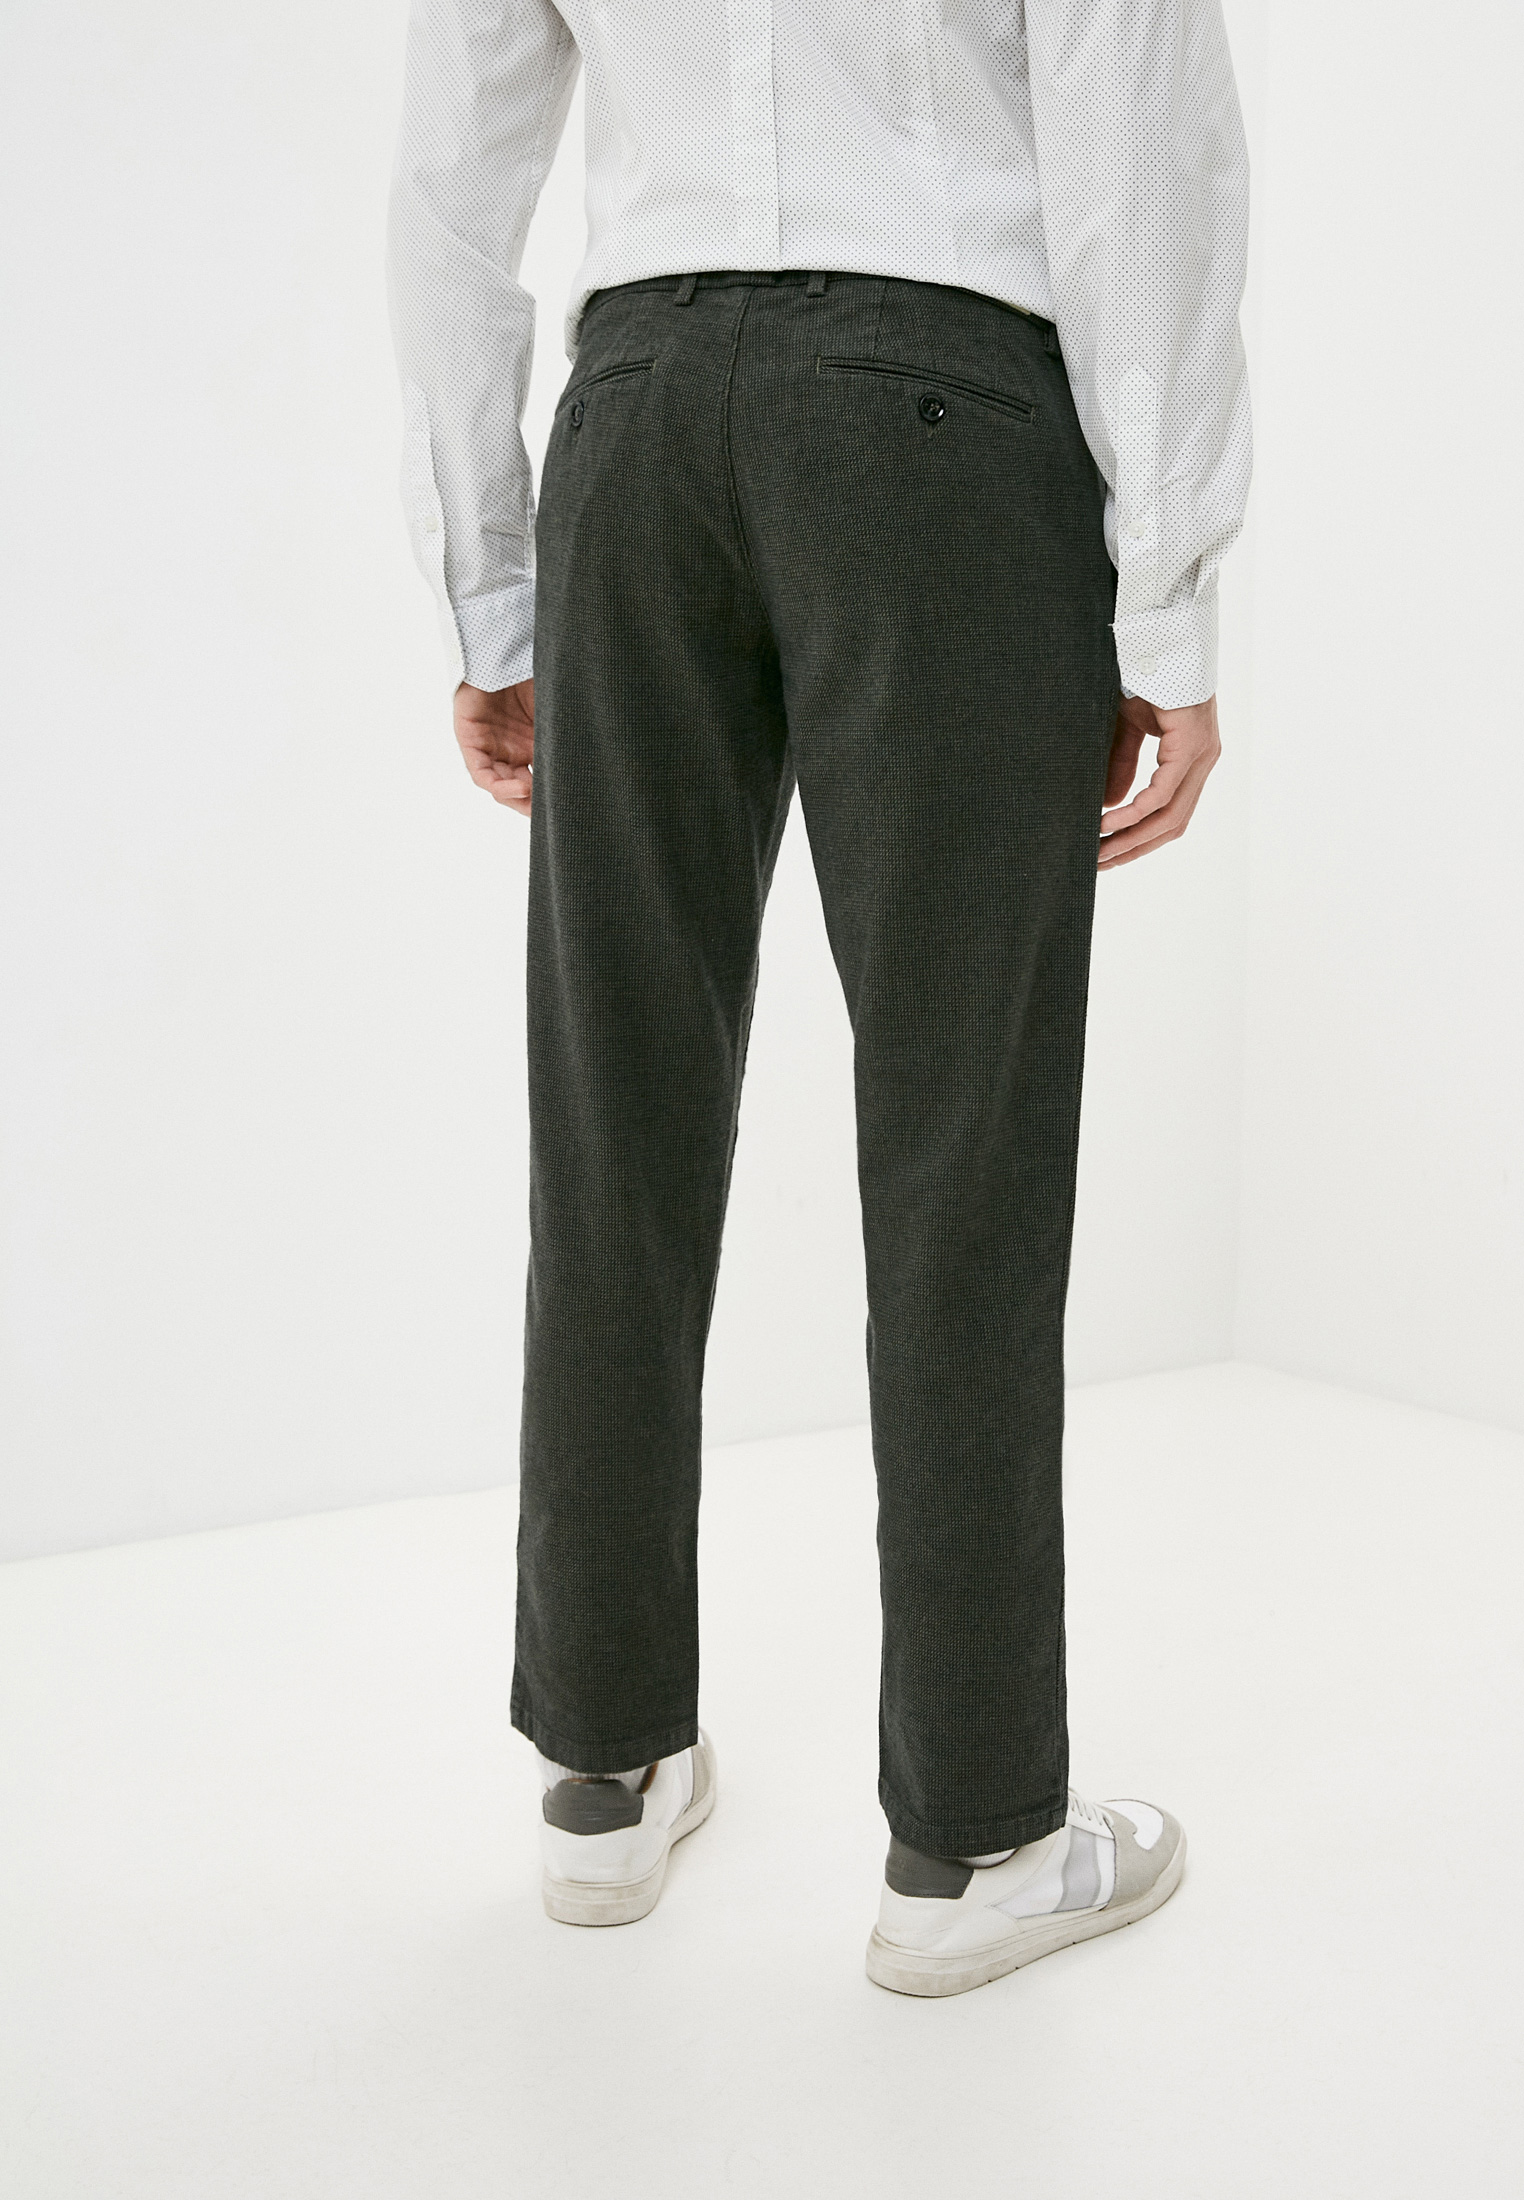 Мужские повседневные брюки Trussardi (Труссарди) 52P00019-1T003200-H-001: изображение 4